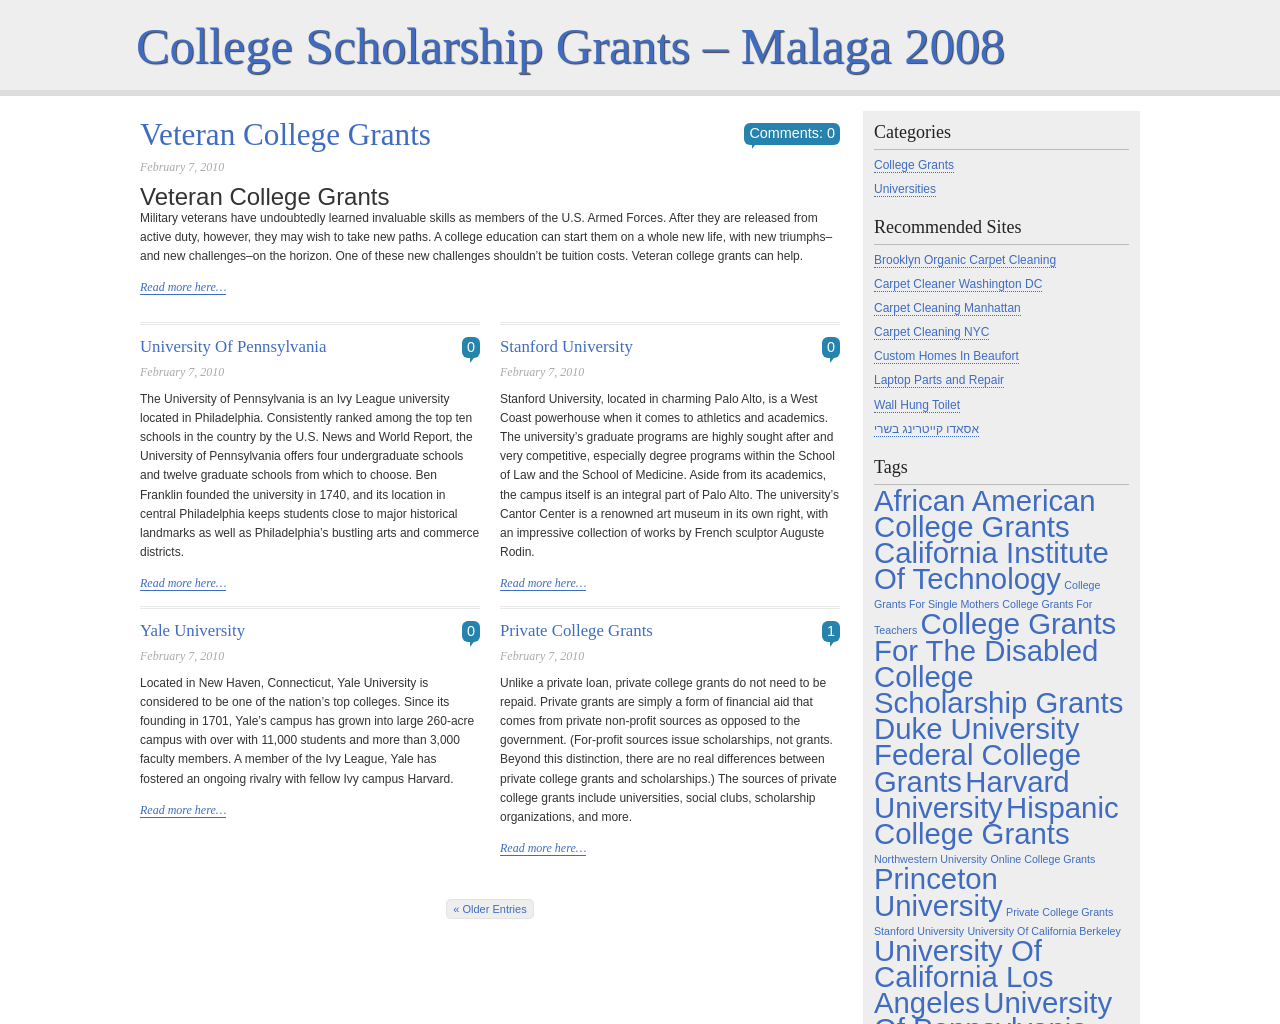 malaga2008.com